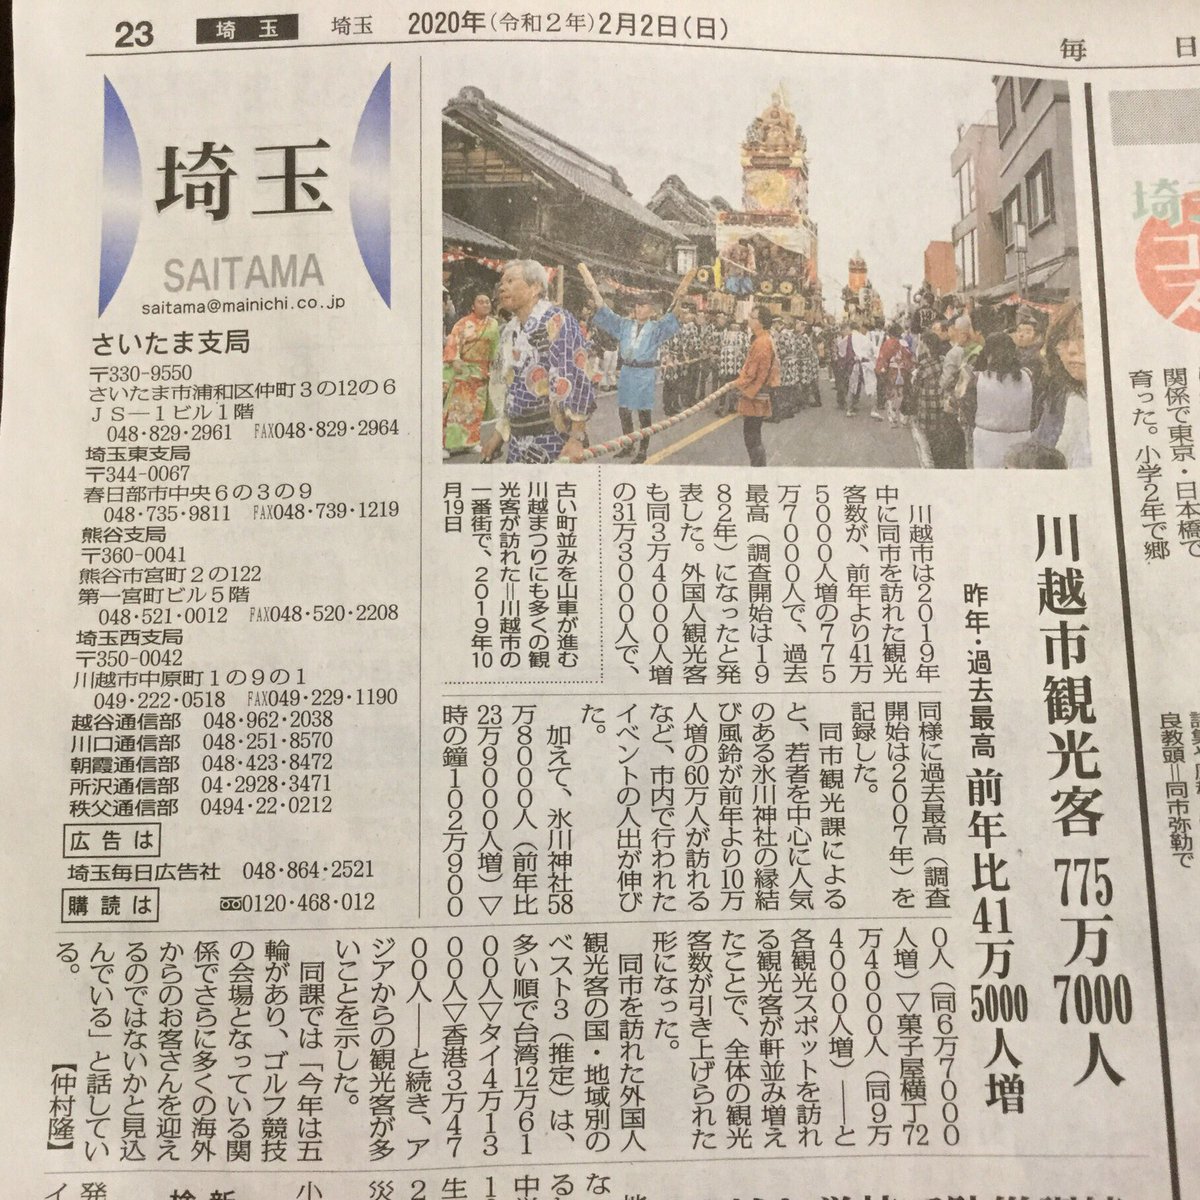 毎日新聞の埼玉版に2019年の川越市観光客数775万人の記事が。

氷川神社行く人ほんと多いなぁ!

※川越市がやってる観光客算出方法は2枚目の画像下部より 